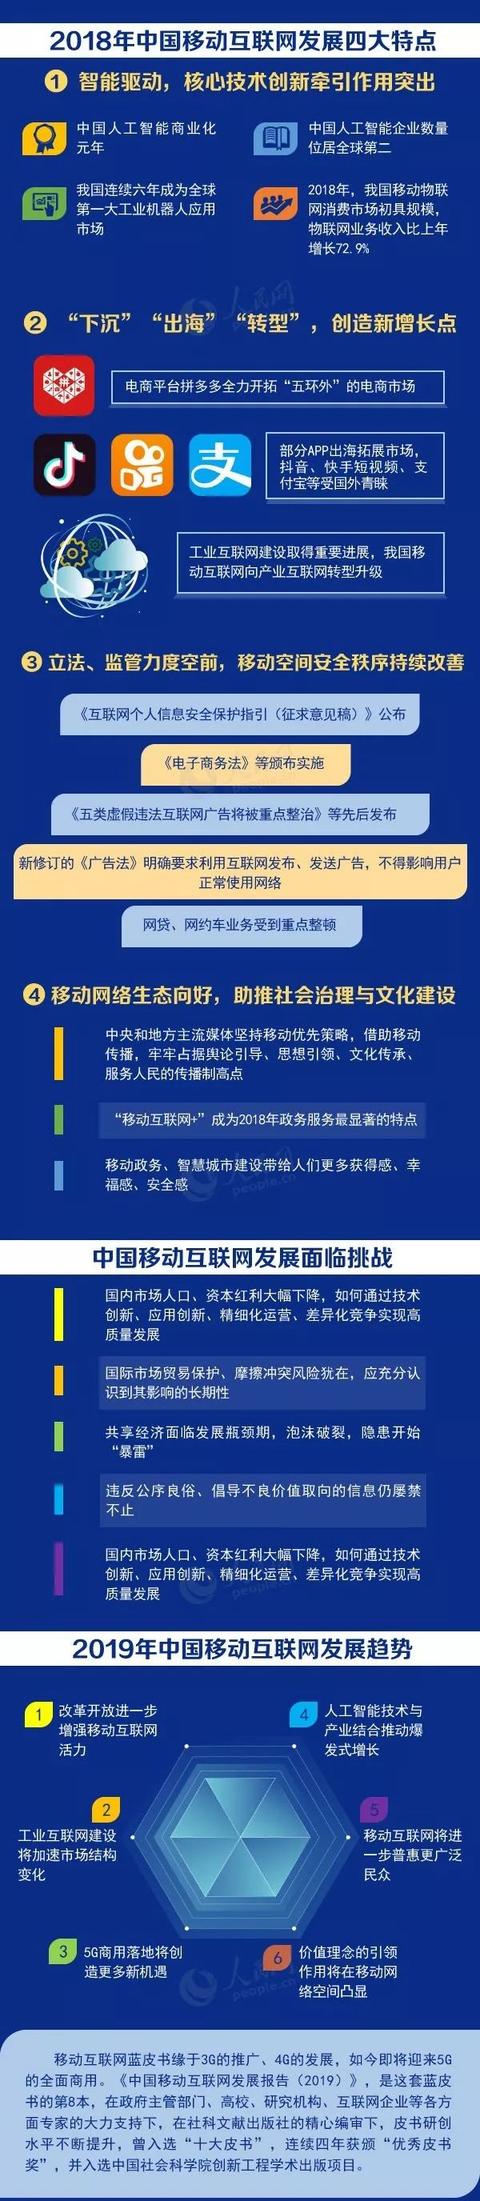 2019 中国移动互联网发展报告